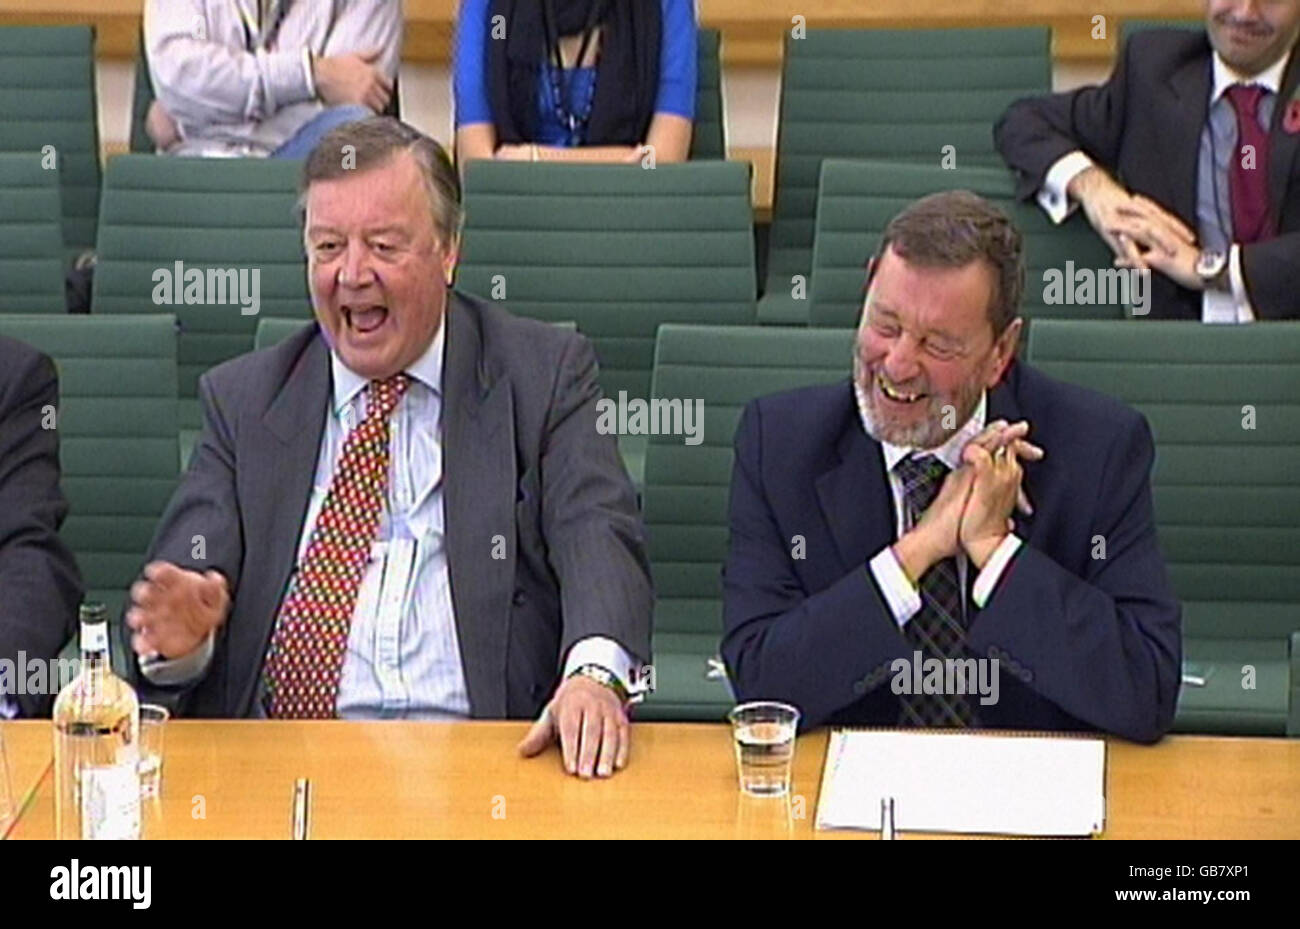 Kenneth Clarke (izquierda) y David Blunkett, ex Secretario del Interior, se ríen durante una reunión del Comité Selecto de Administración Pública sobre 'Buen Gobierno' en la Cámara de los Comunes, Londres. Foto de stock